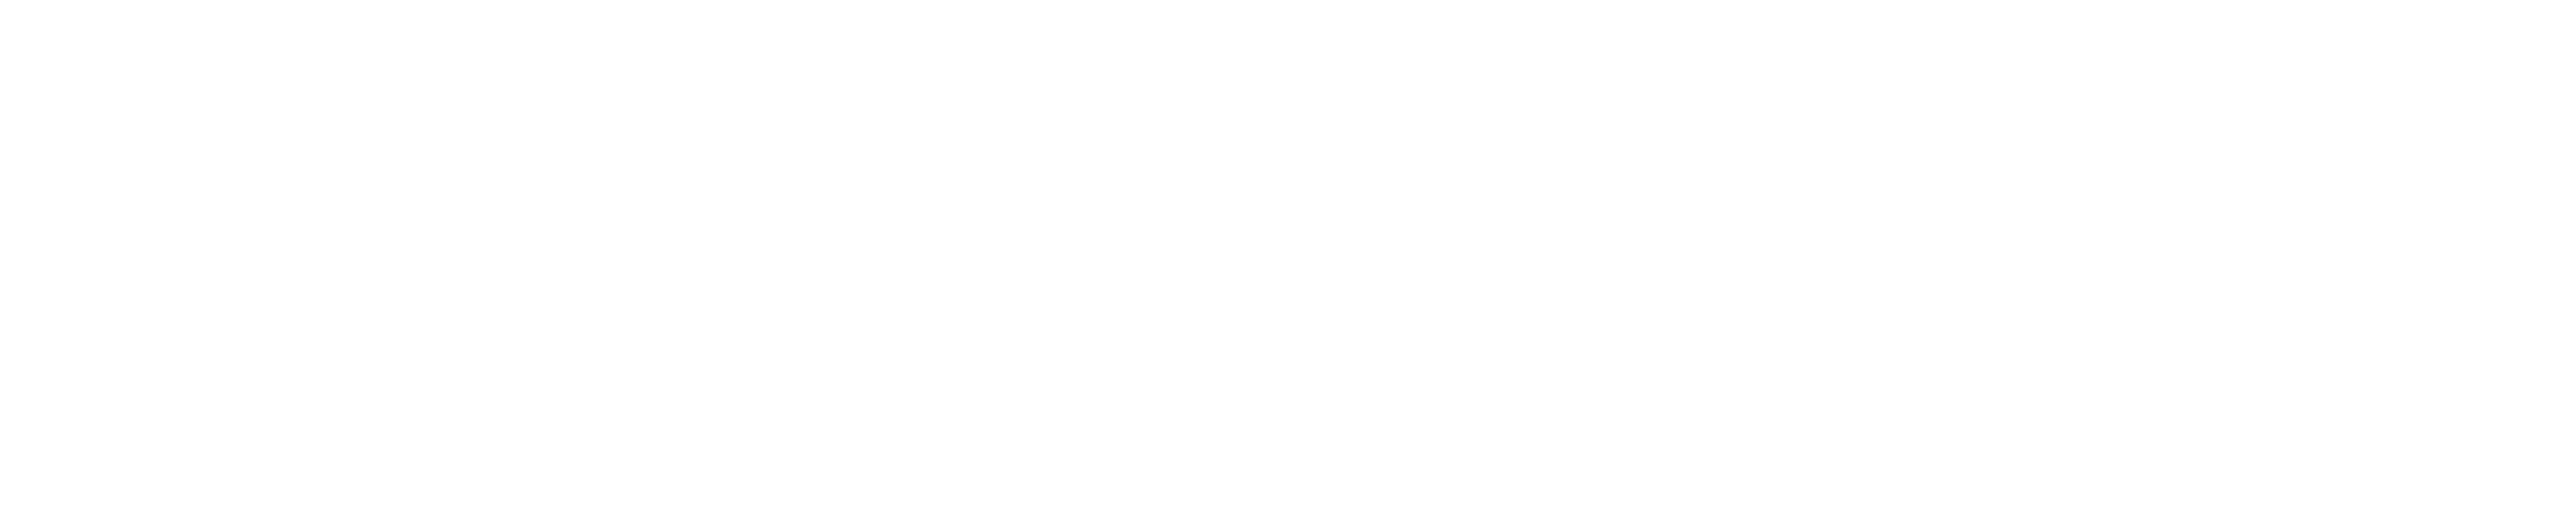 埃塞俄比亚货运标志